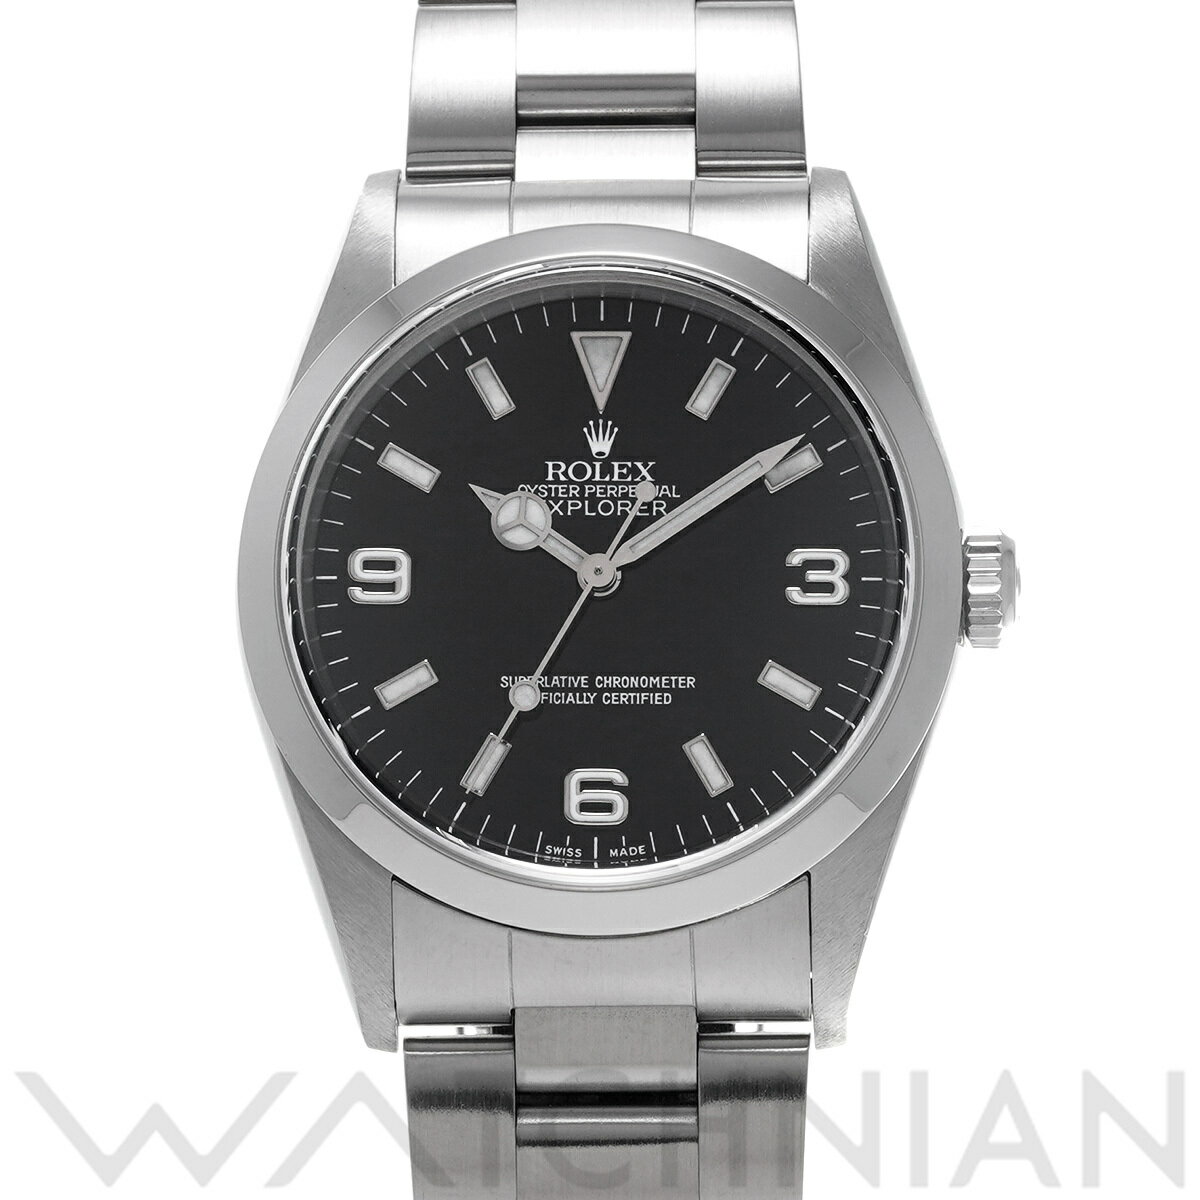 【4種選べるクーポン】【ローン60回払い無金利】【中古】 ロレックス ROLEX エクスプローラー 14270 P番(2000年頃製造) ブラック メンズ 腕時計 ロレックス 時計 高級腕時計 ブランド